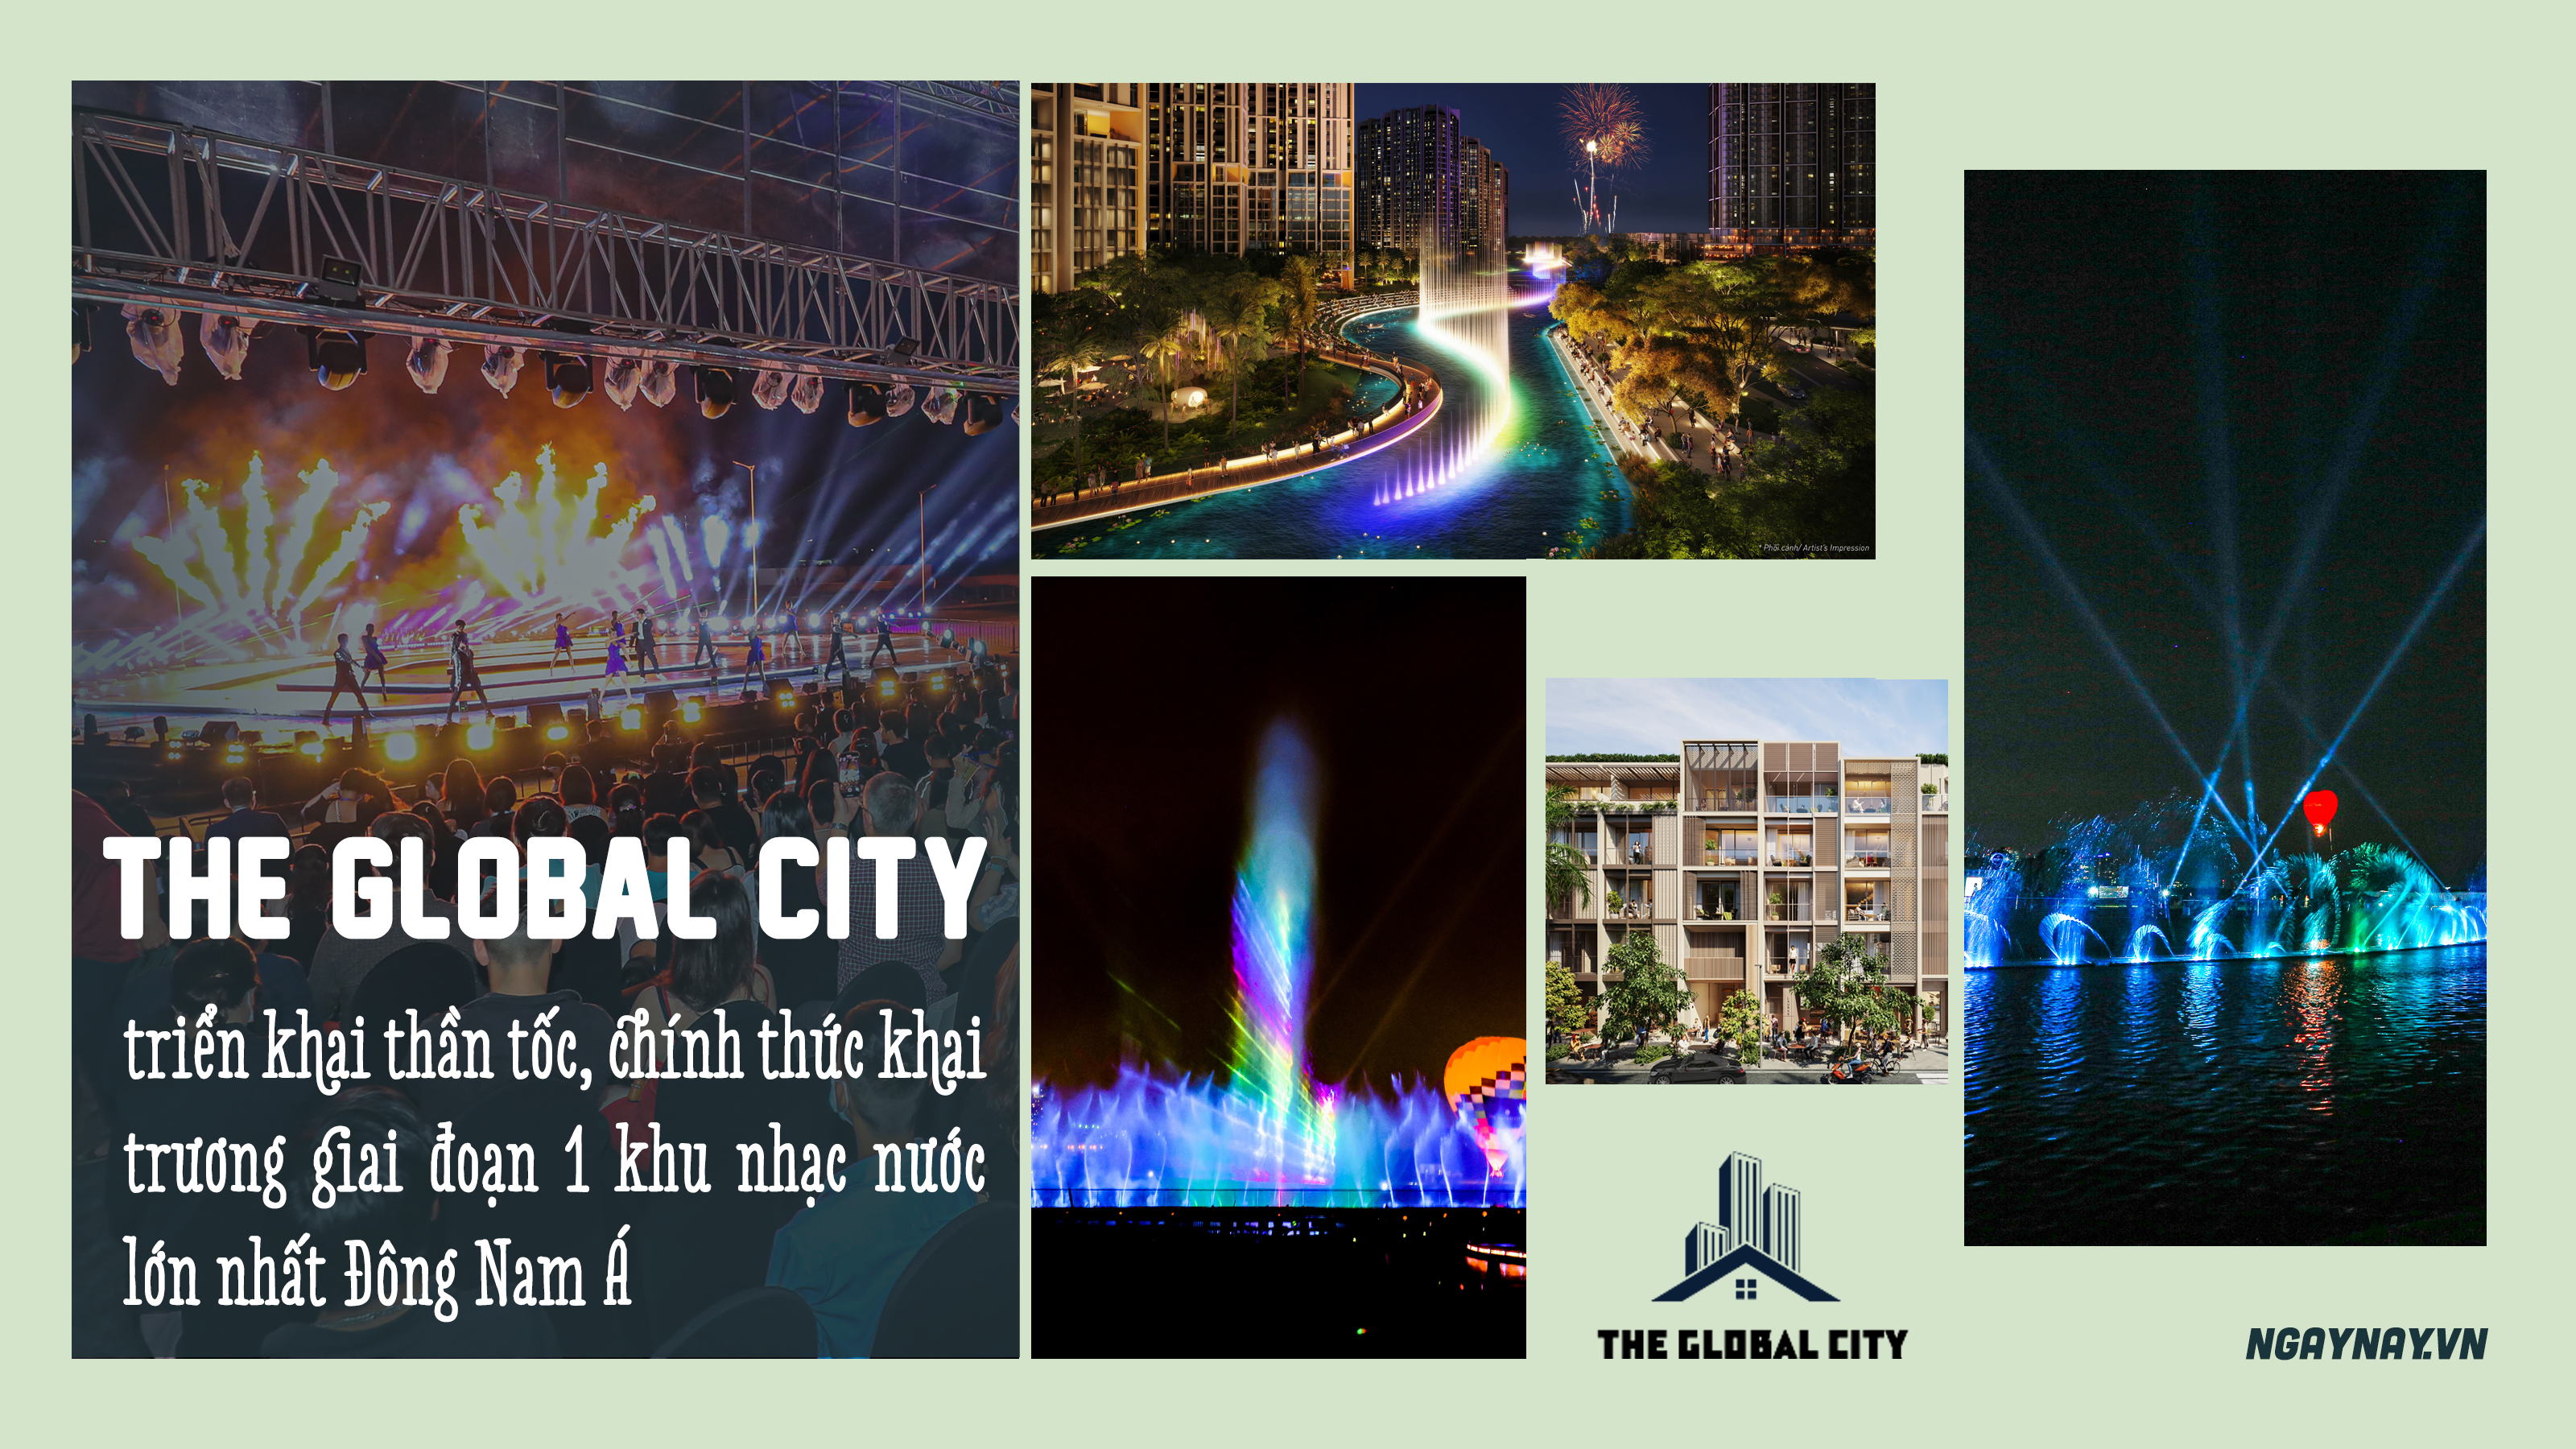 The Global City chính thức khai trương giai đoạn 1 khu nhạc nước lớn nhất Đông Nam Á